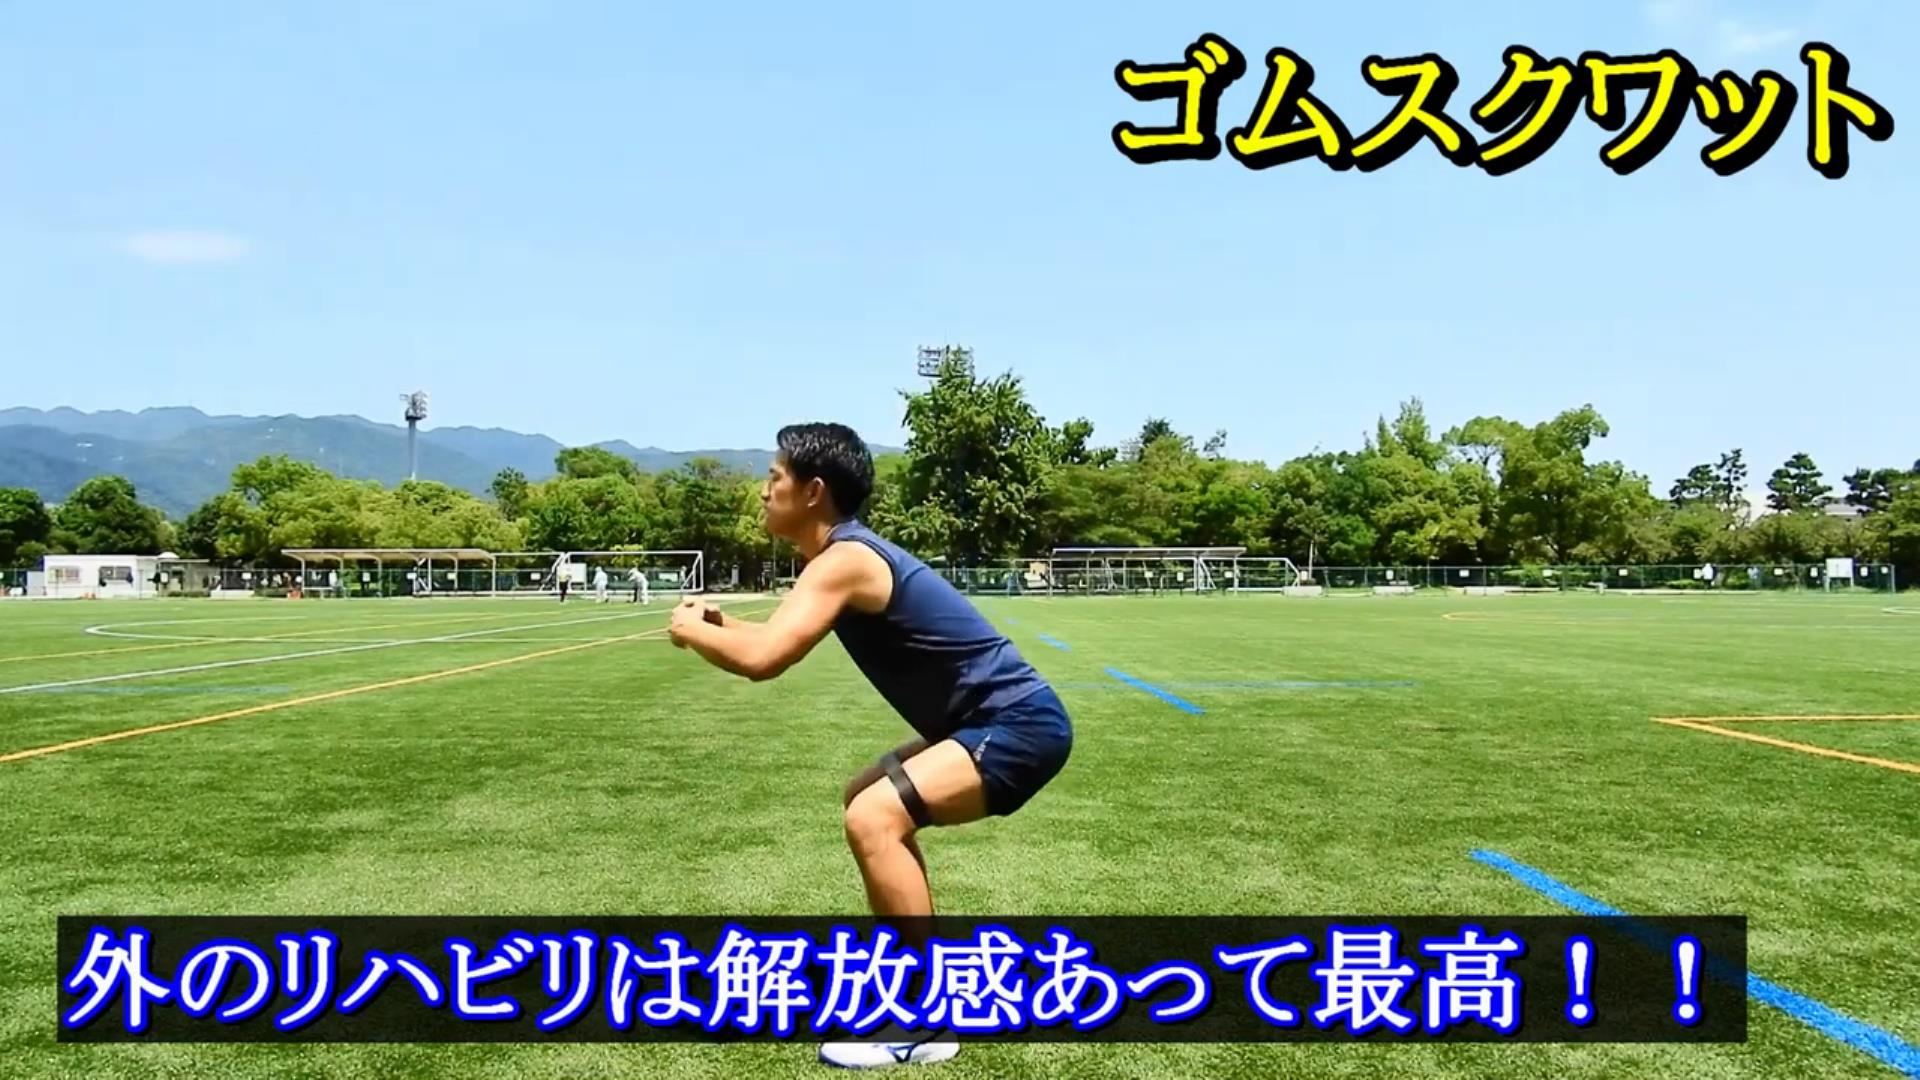 青森山田のフィジカルトレーニング サッカーの体づくりに活かそう 個人レッスン随時受け付けています